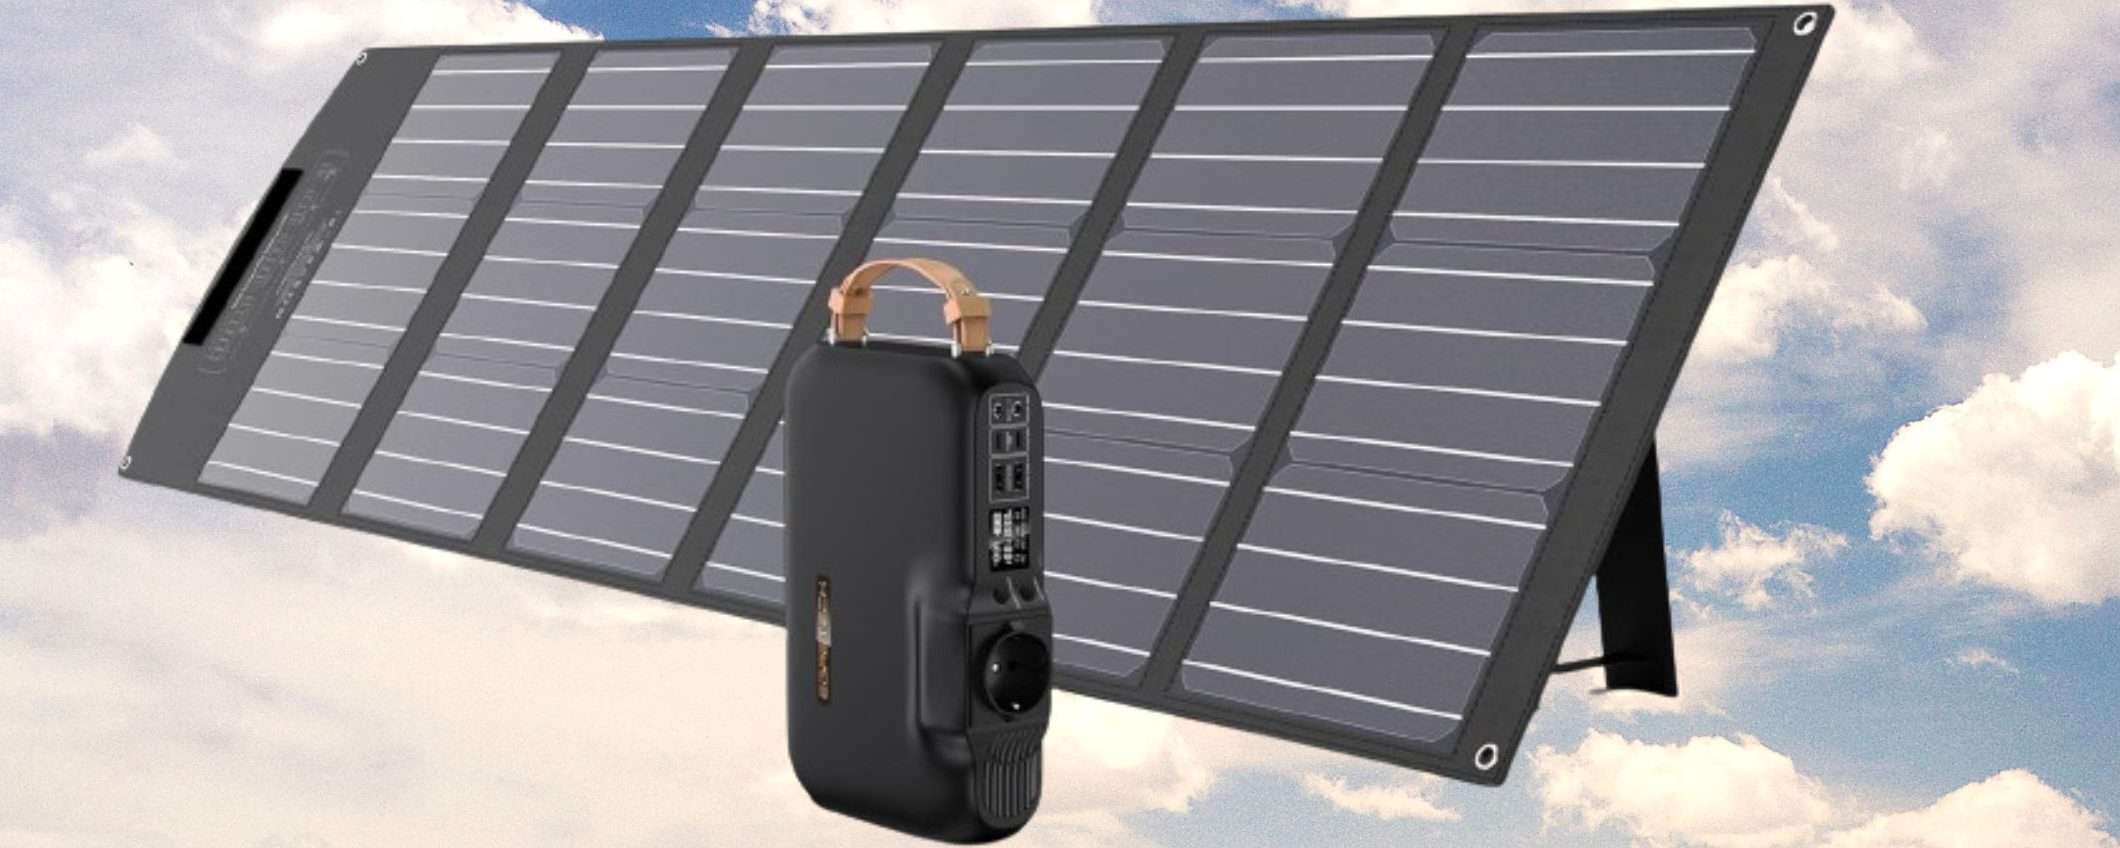 Centrale elettrica solare con pannello 100W a prezzo SHOCK su Amazon